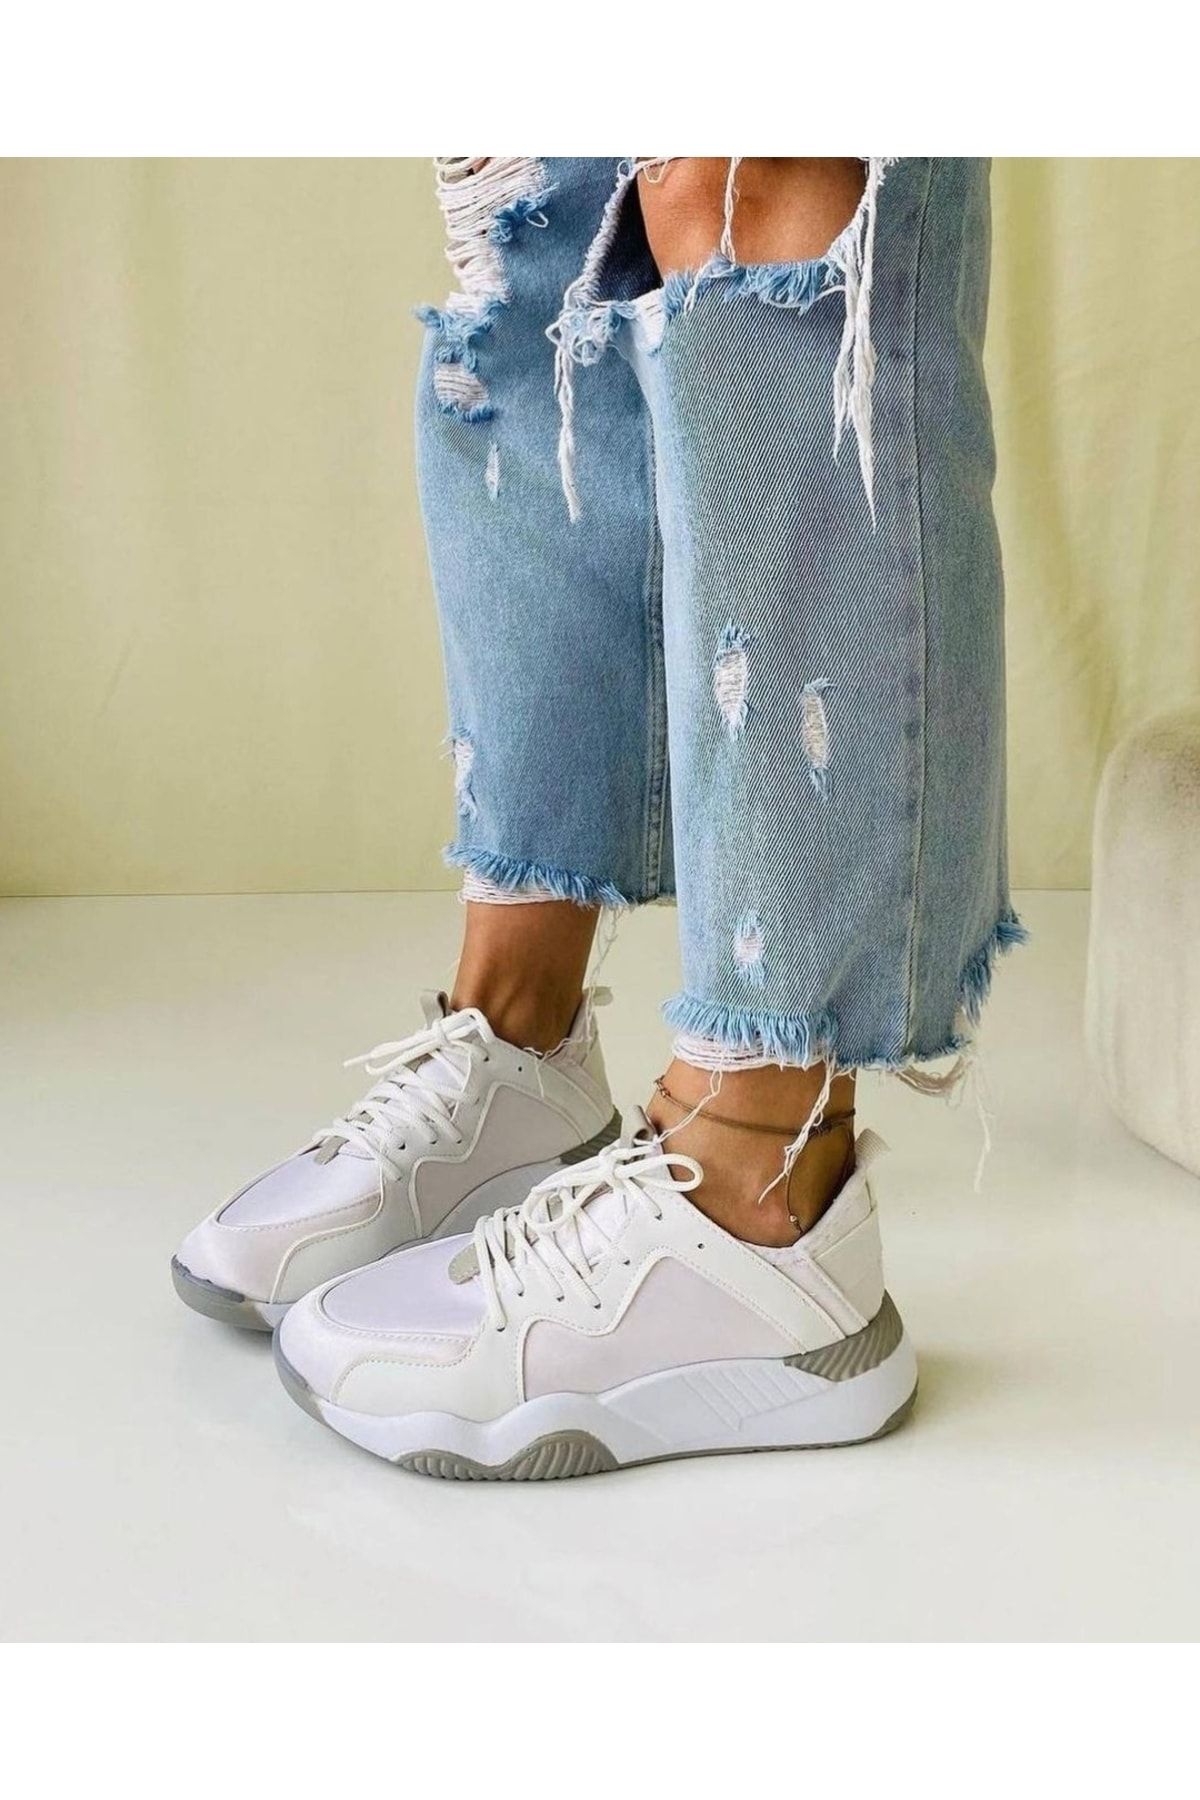 Afilli Kadın Beyaz Krem Bej Kalın Platform Taban Dalgıç Esnek Kumaş Bağcıklı Sneaker Spor Ayakkabı